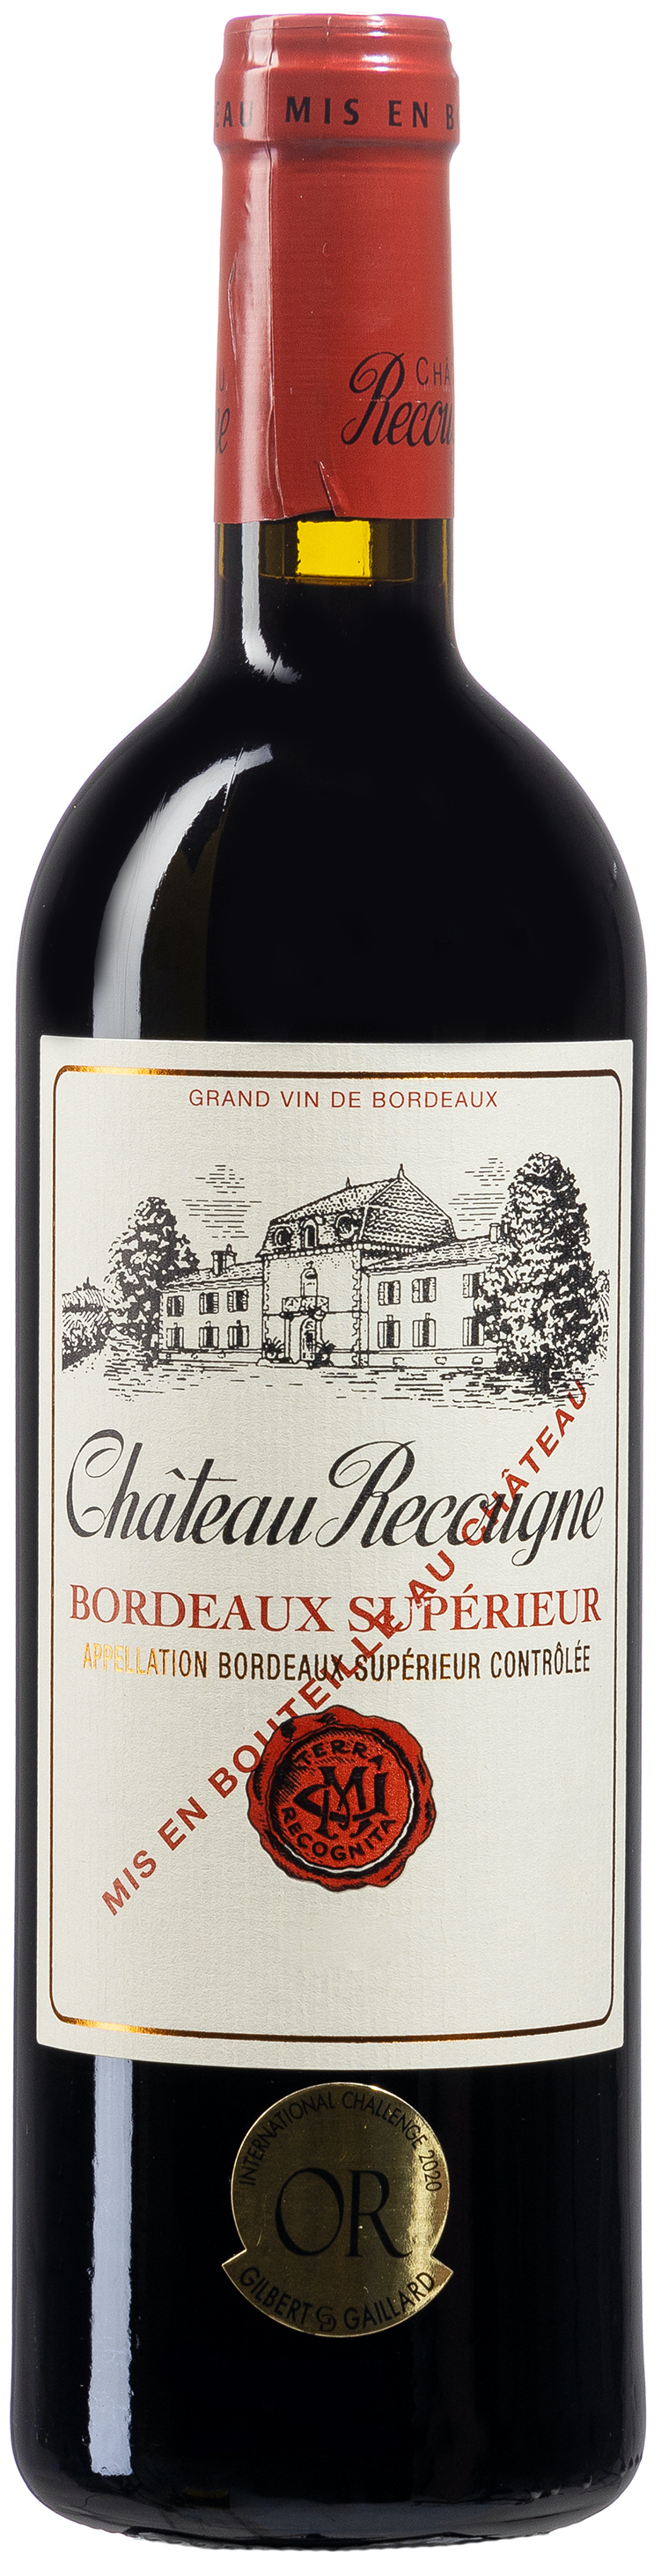 Chateau Recougne Bordeaux Superieur 14,5% vol. 0,75L